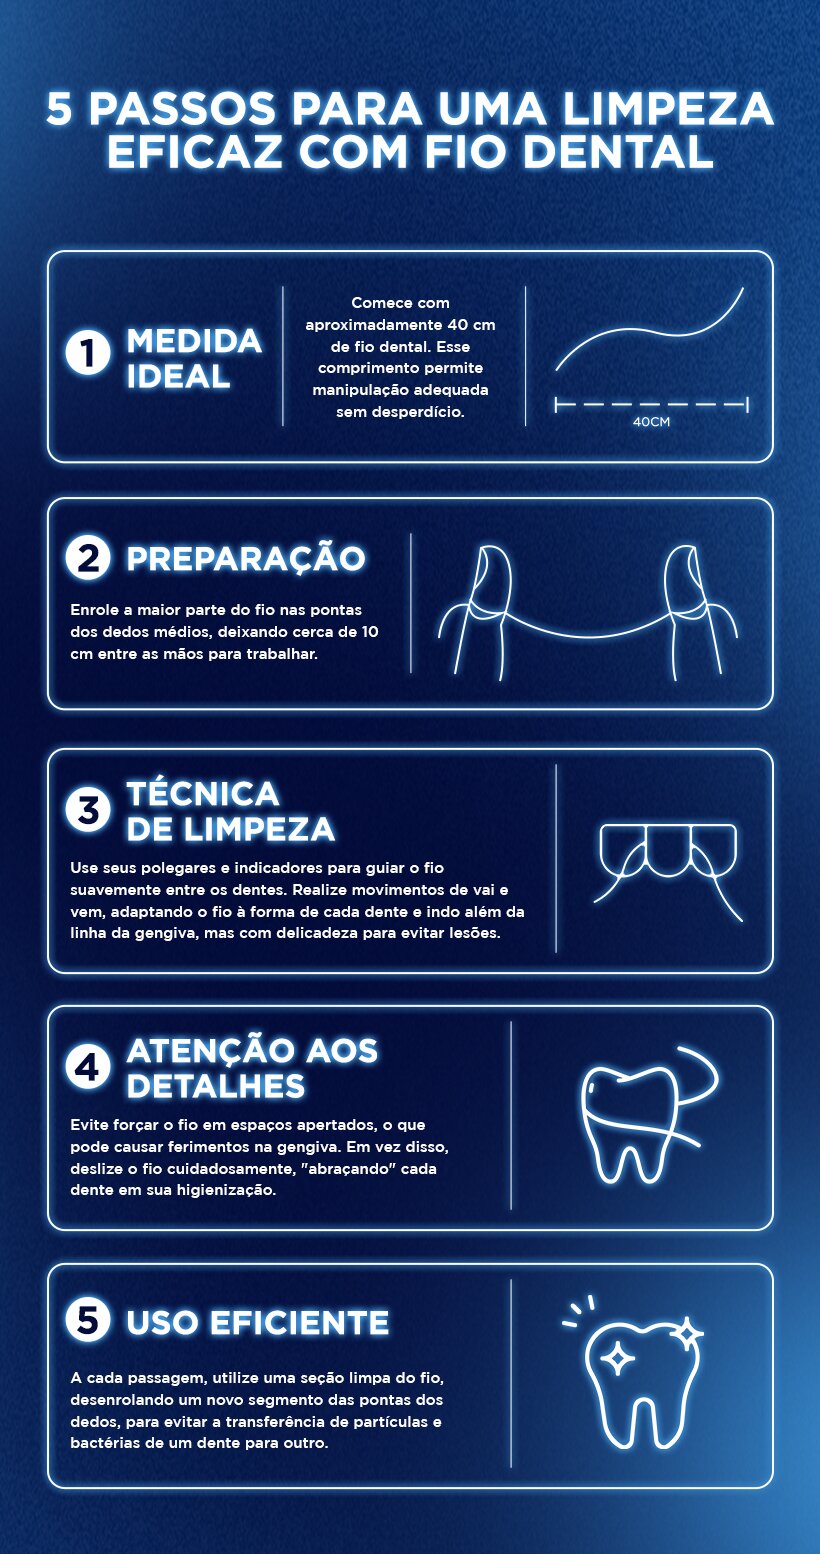 Infográfico em azul detalha 5 passos para limpeza com fio dental, incluindo técnica e dicas de eficiência.